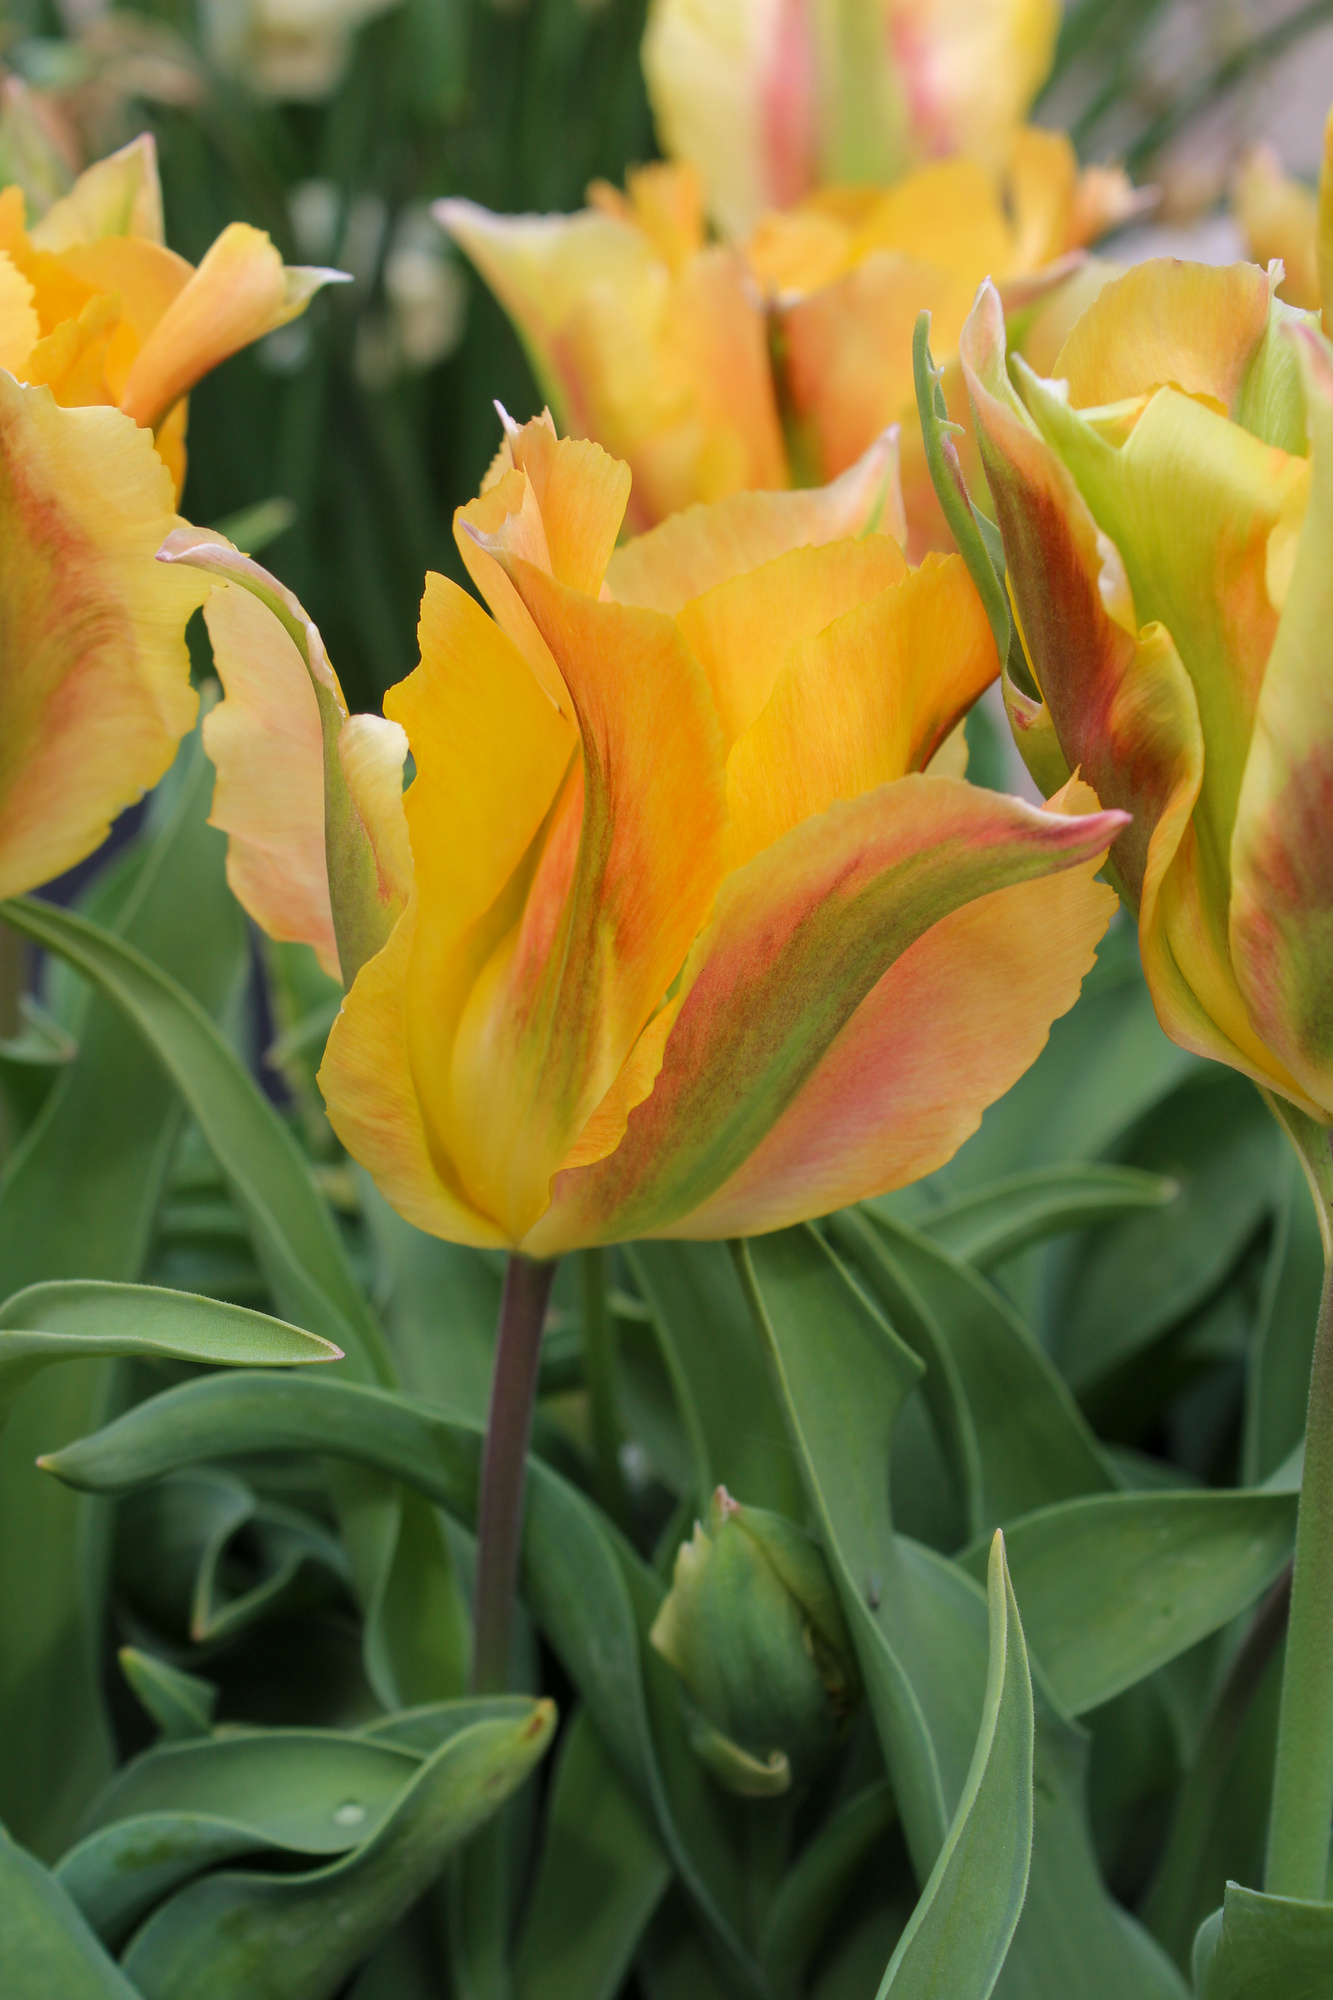 Viridiflora-Tulpen Golden Artist